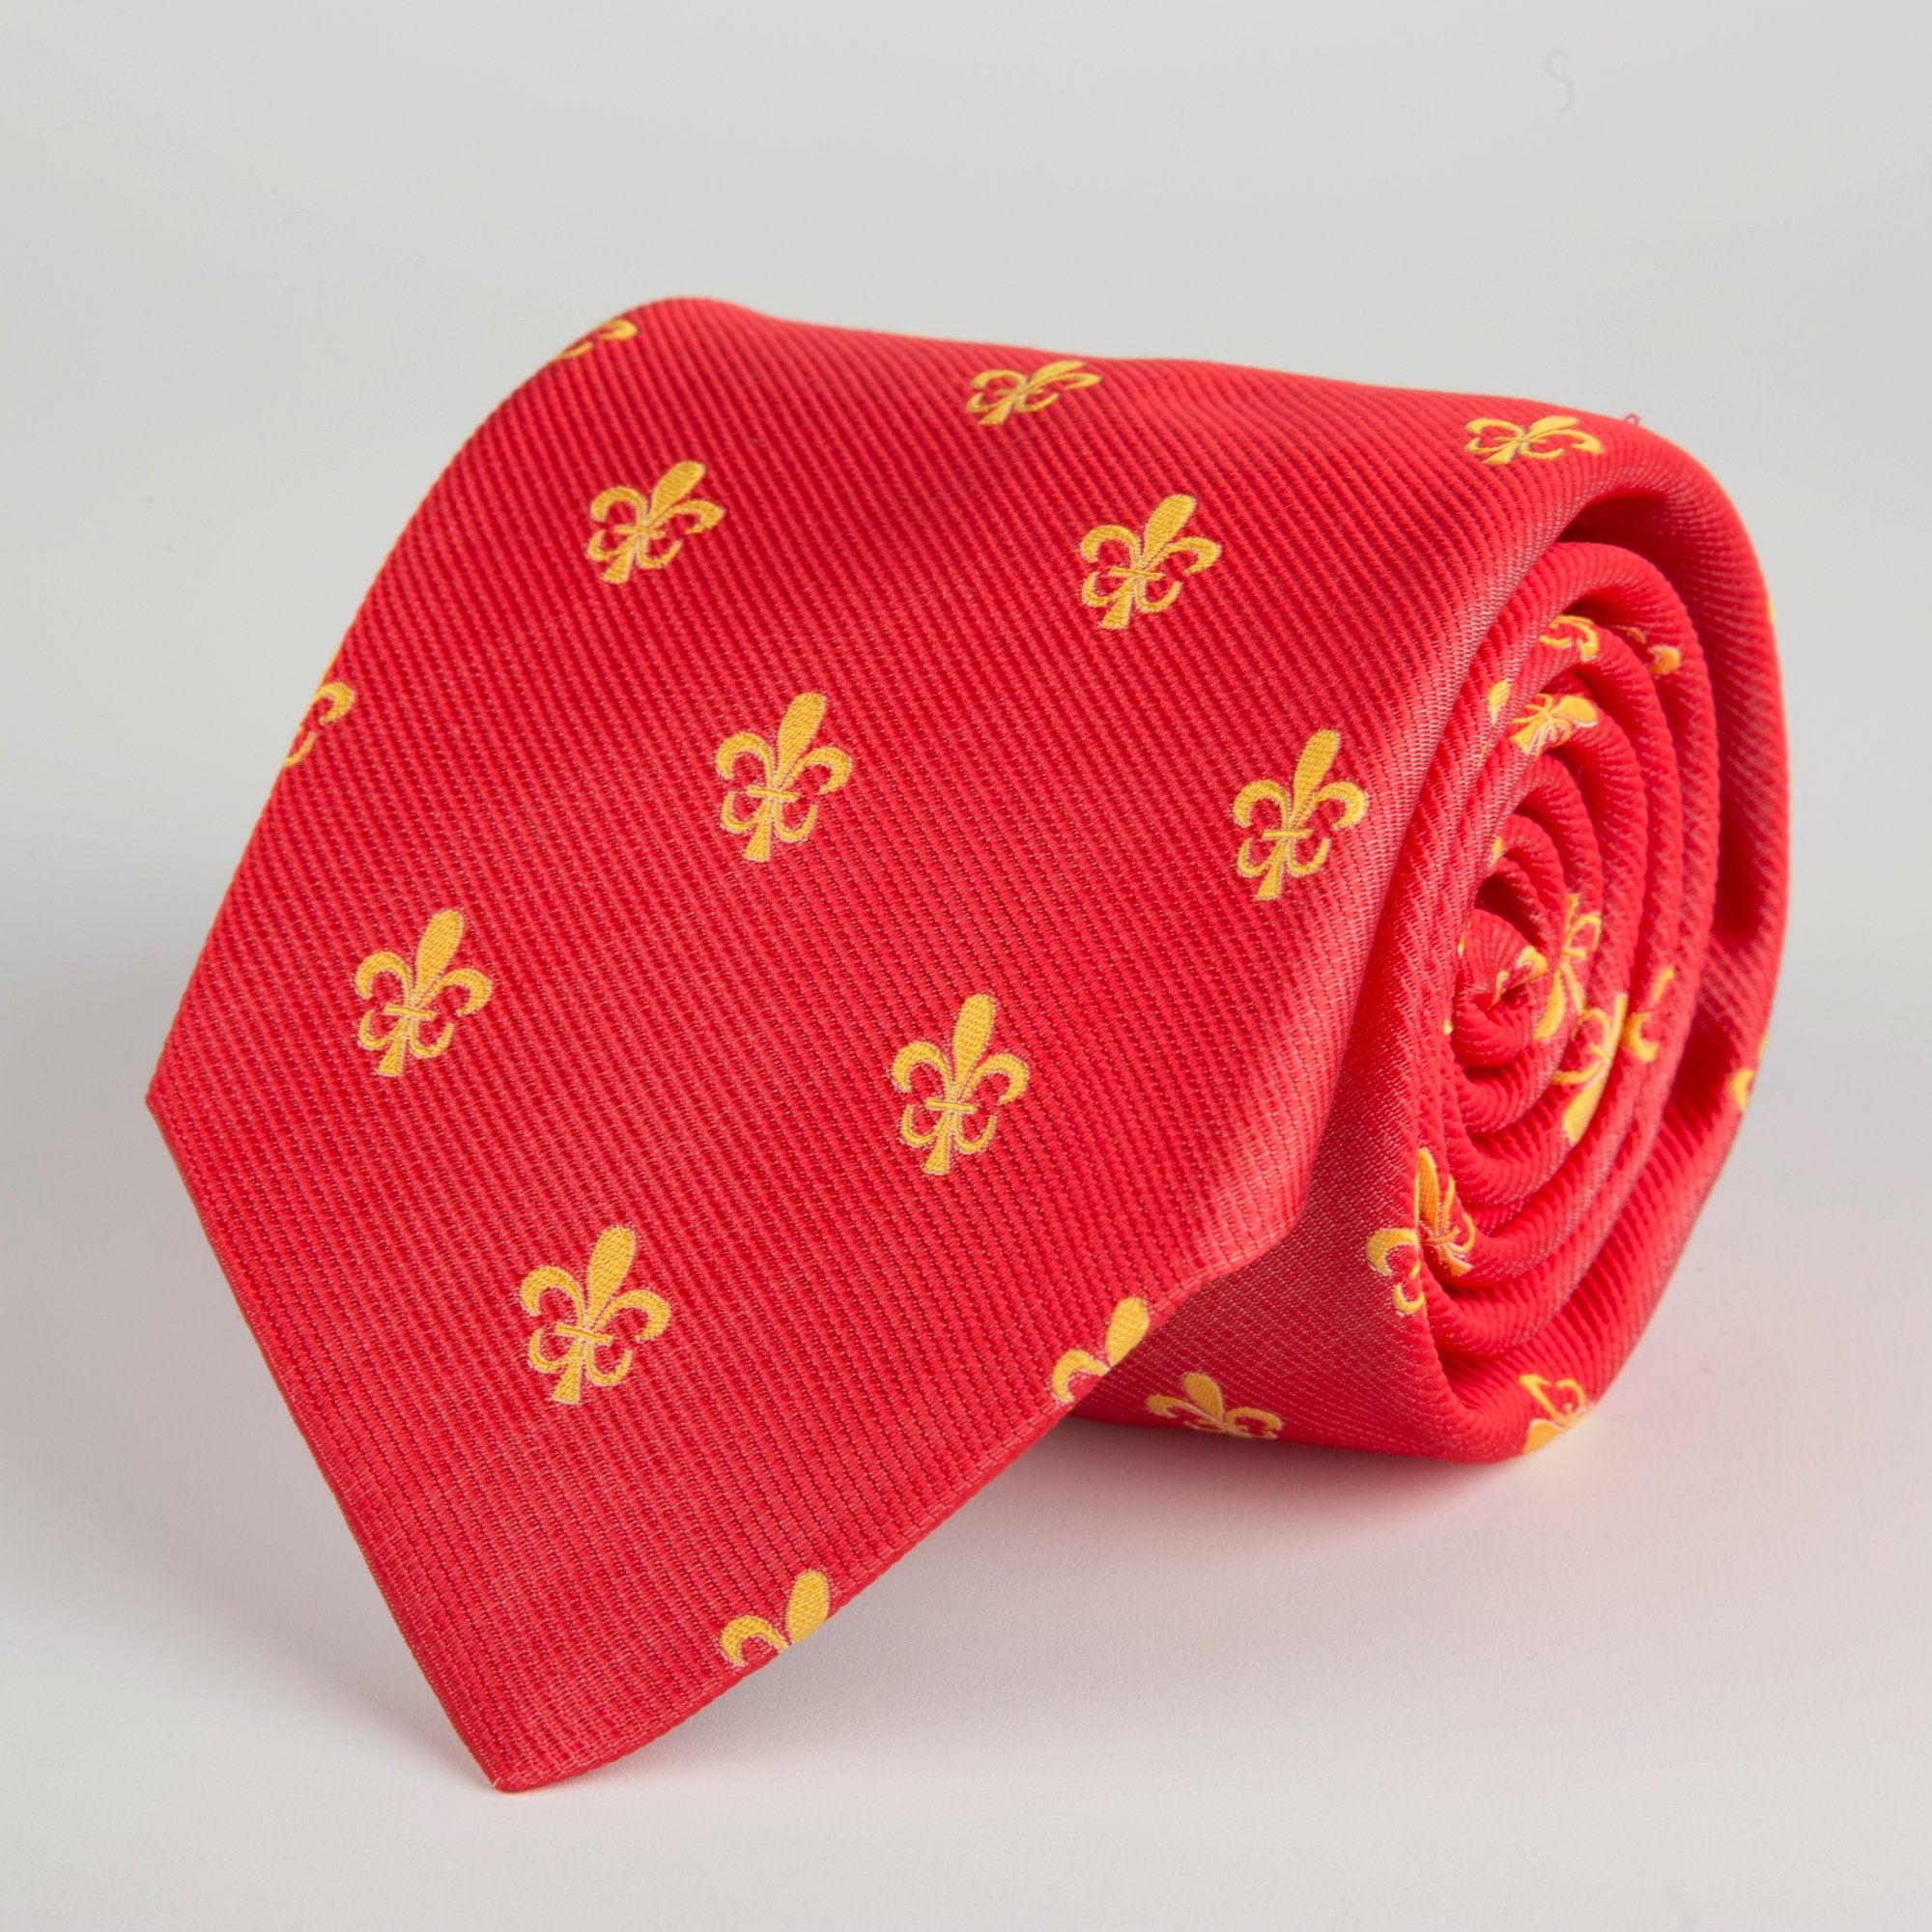 Red Fleur-De-Lys Woven Silk Tie - British Made